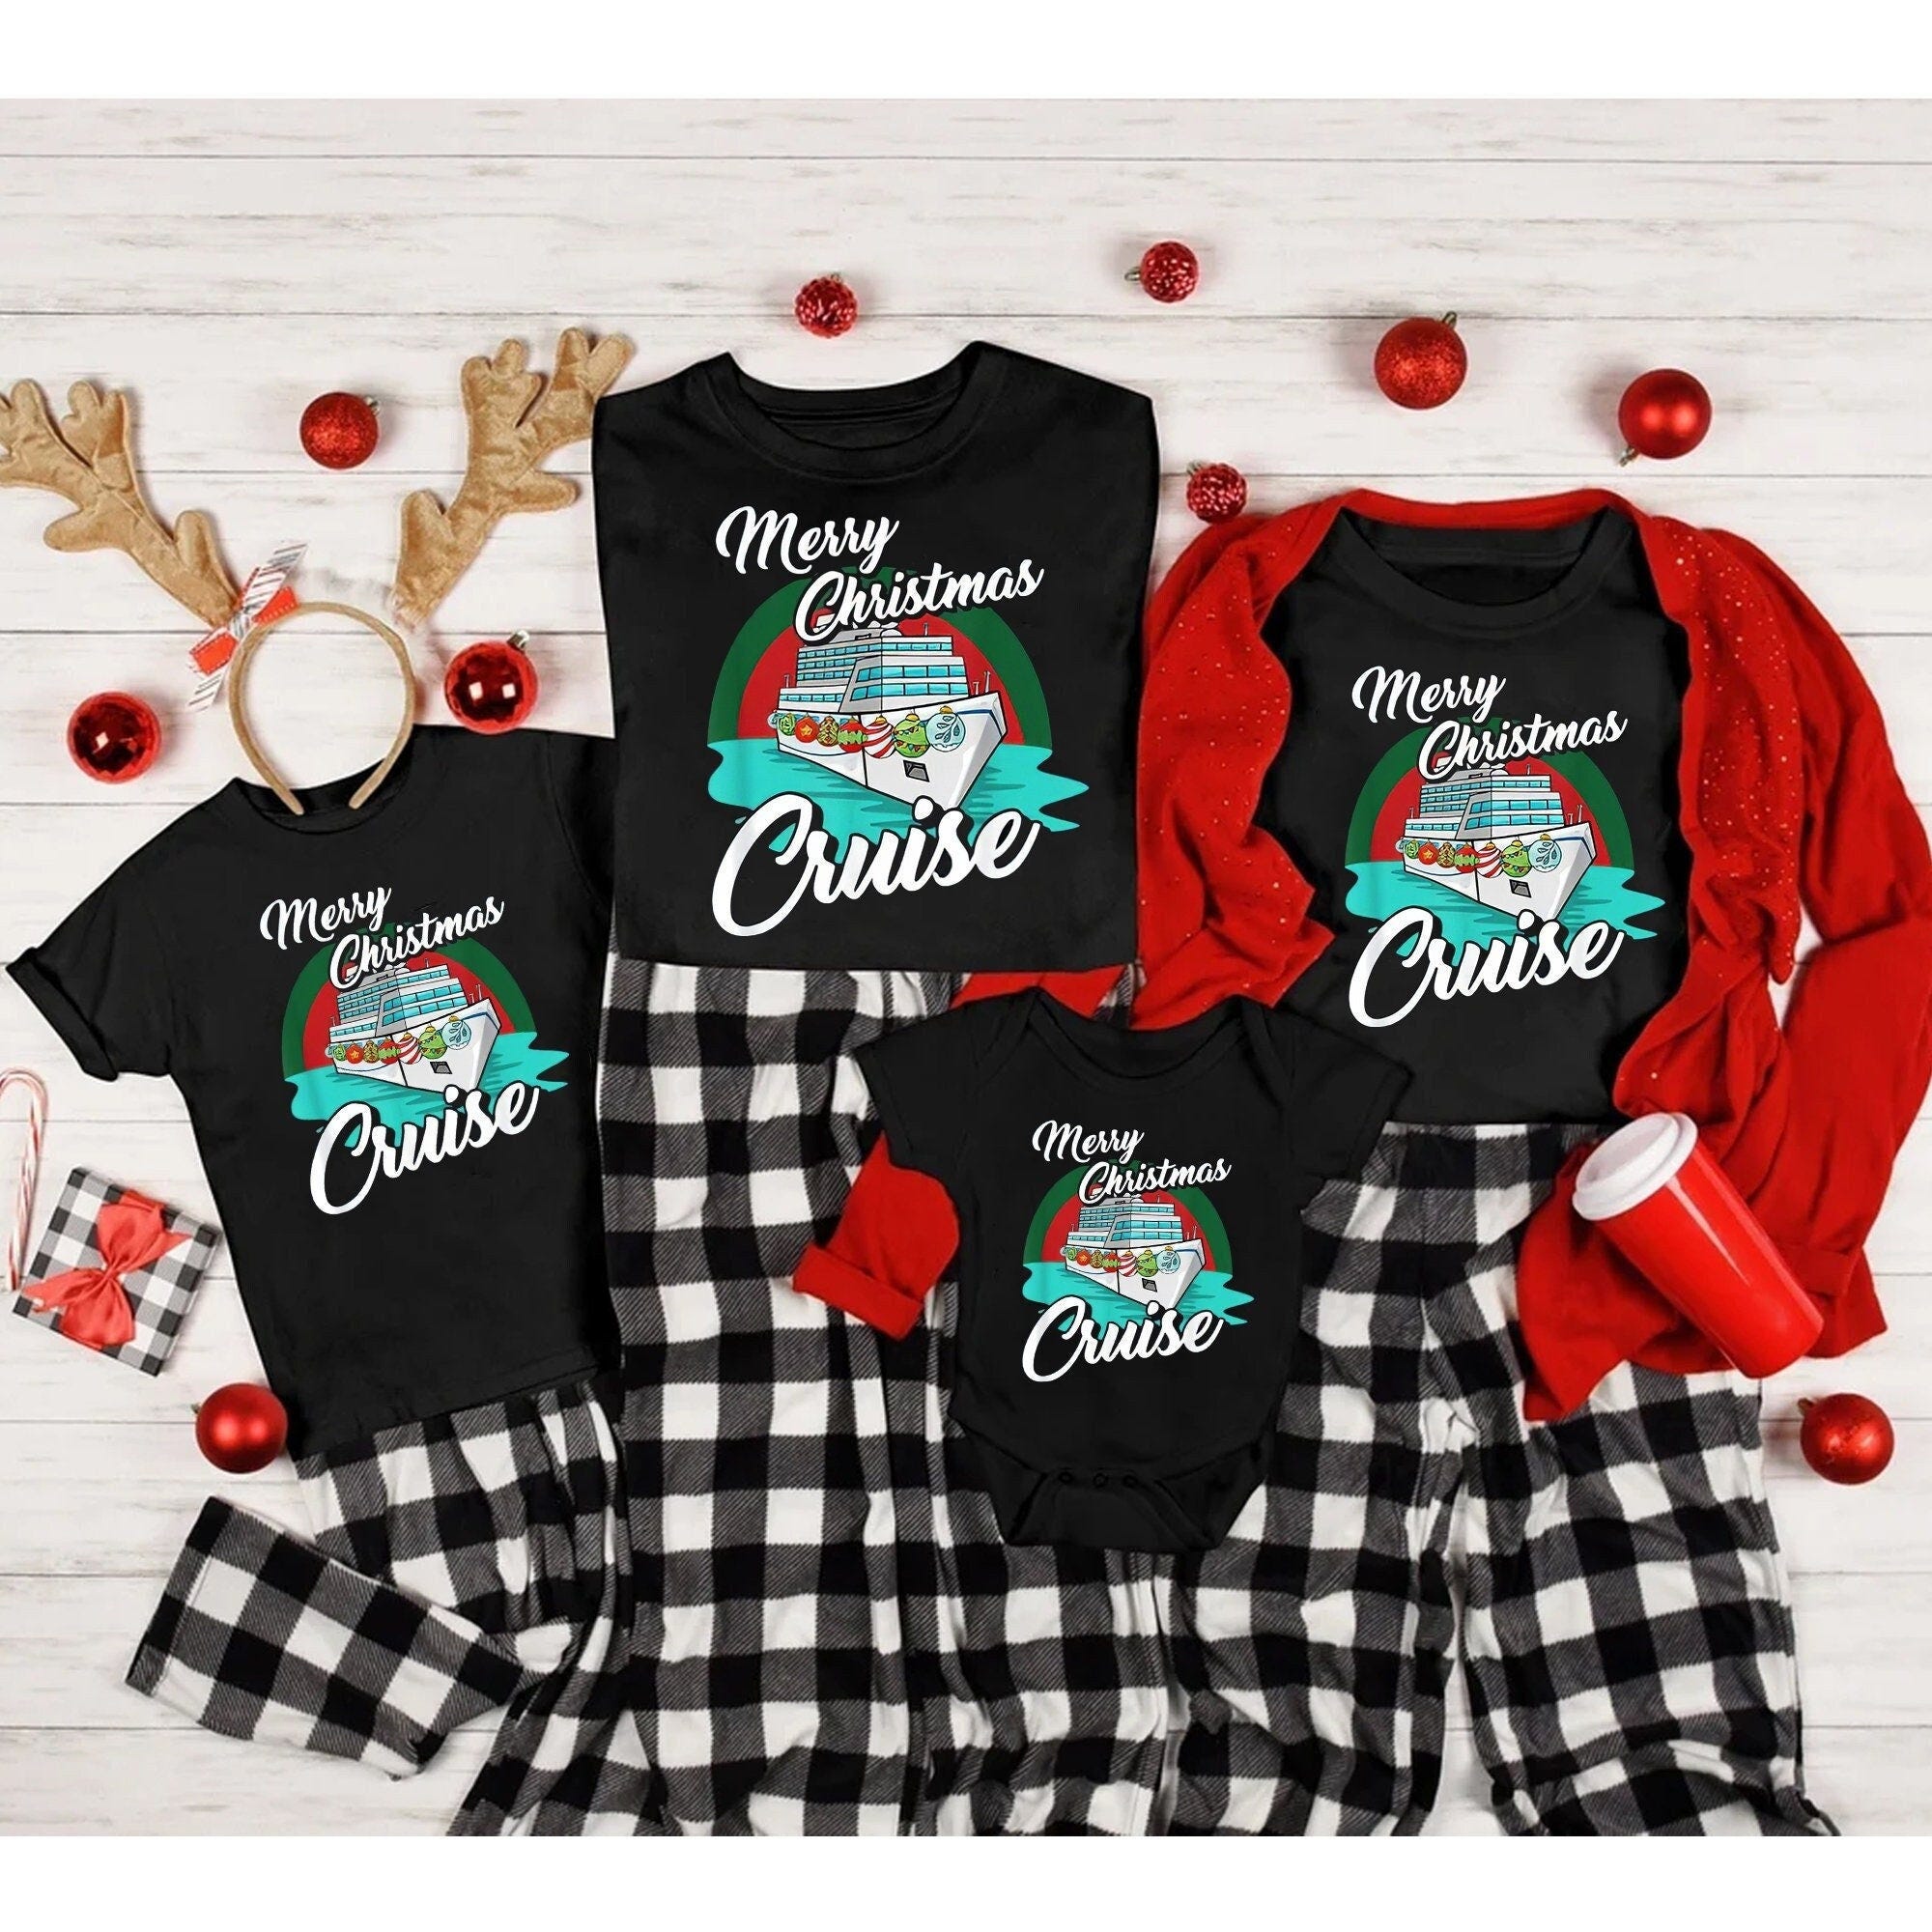 Merry Christmas Cruise Shirt, Vacation Cruising T-Shirt, Christmas Cruise Matching Shirts, Cruise Shirts, Family Cruise Shirts, Family Shirt